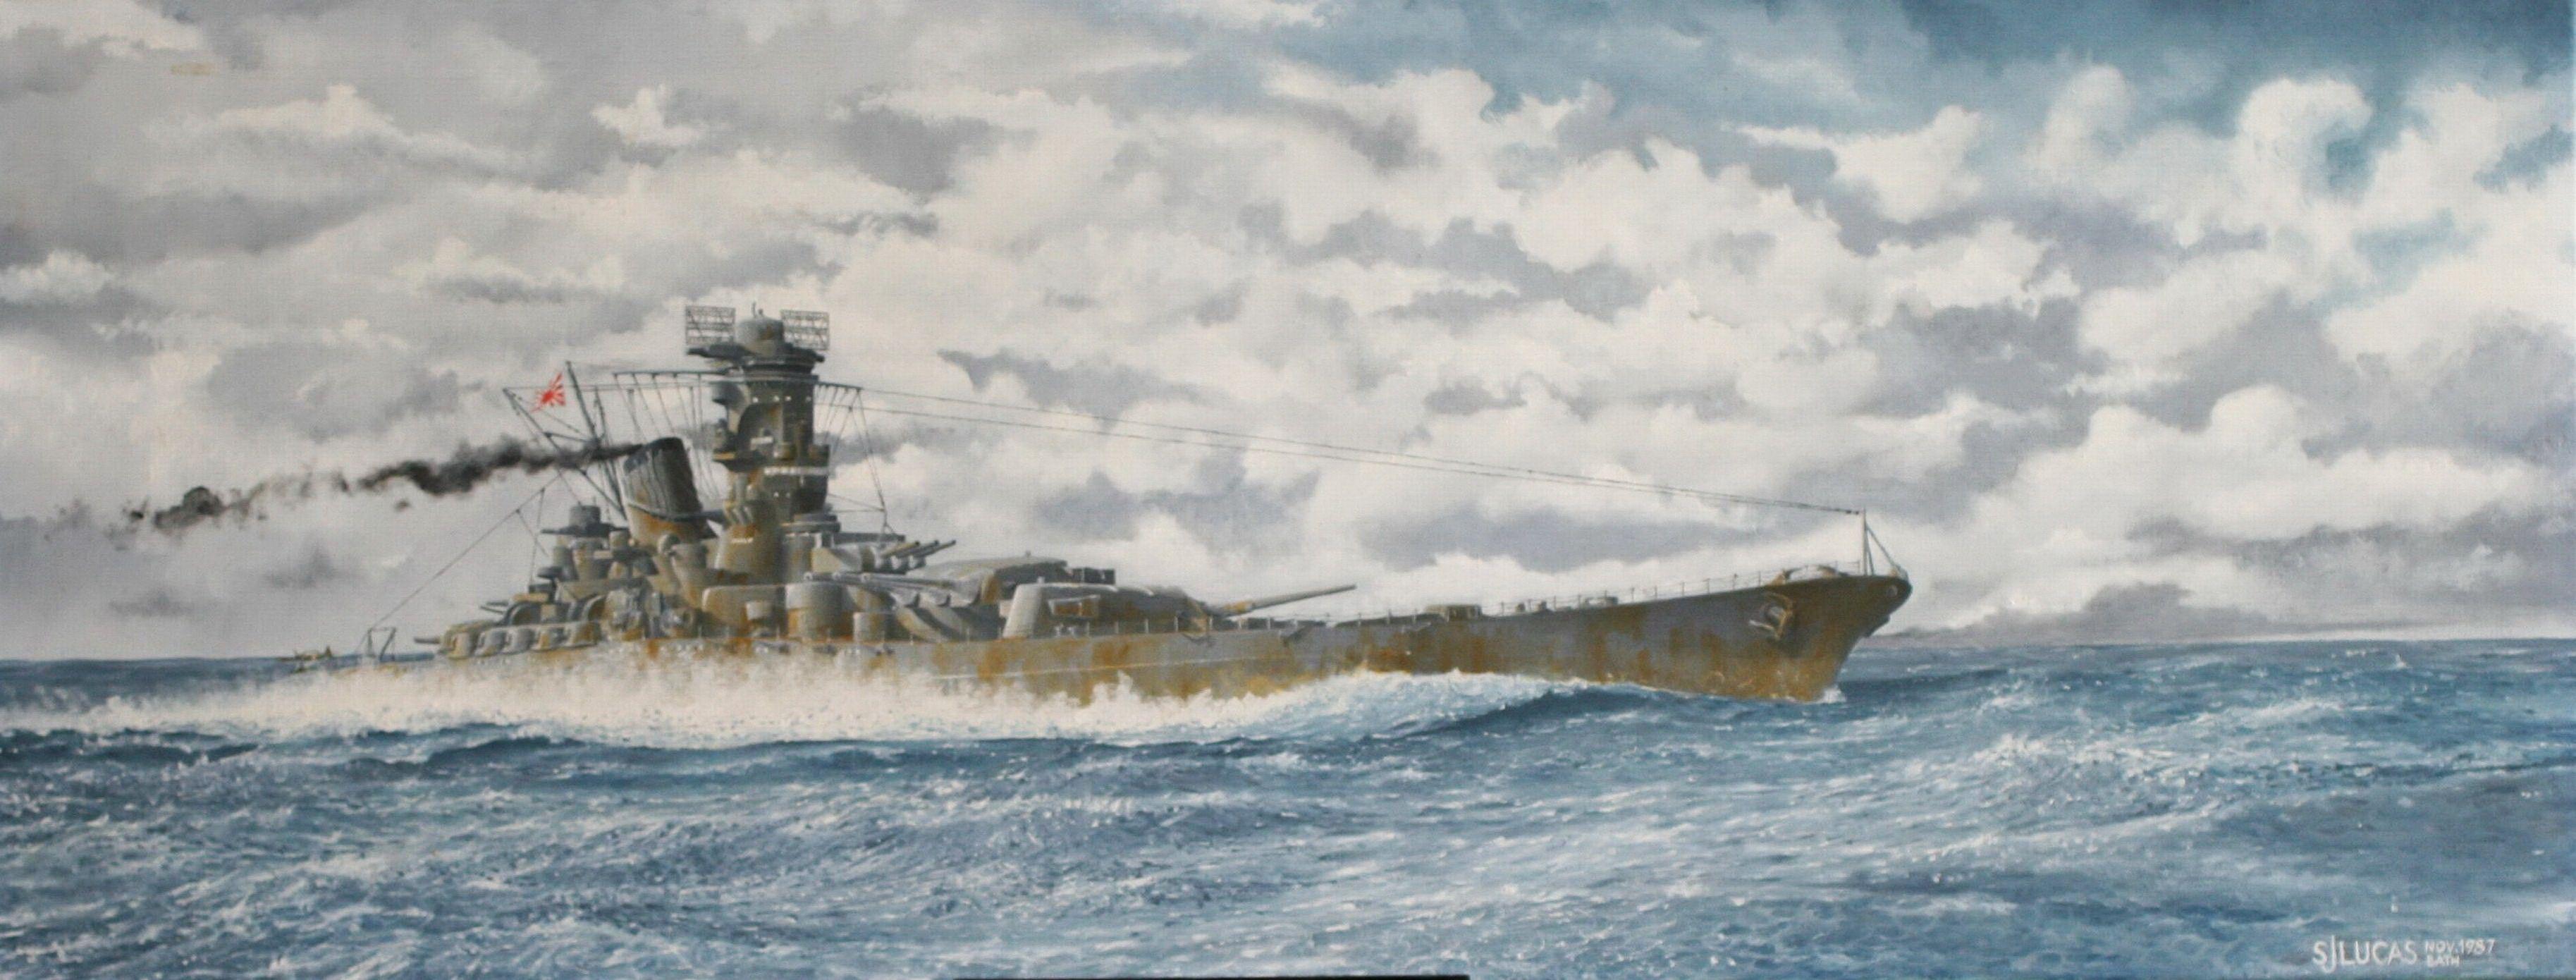 Japanese Battleship Yamato Wallpapers, HD Japanese Battleship Yamato  Backgrounds, Free Images Download